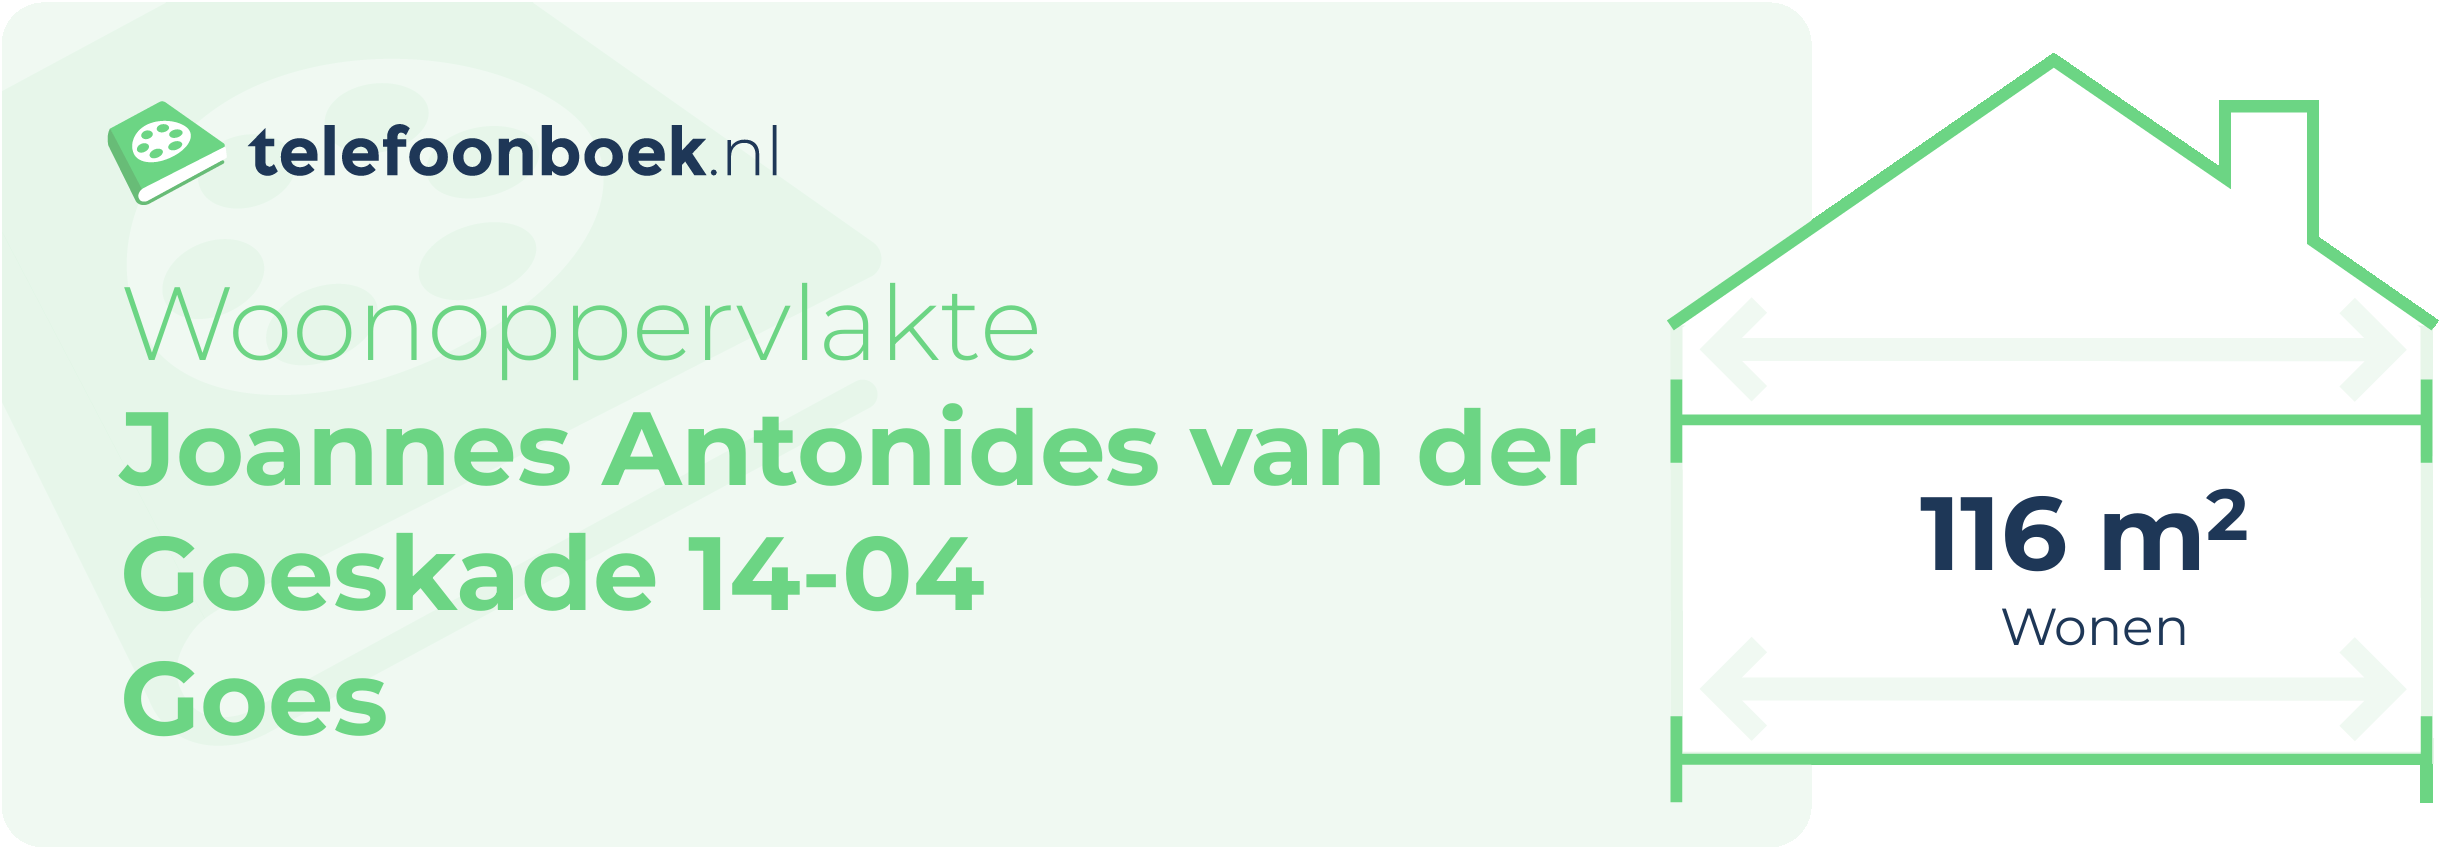 Woonoppervlakte Joannes Antonides Van Der Goeskade 14-04 Goes